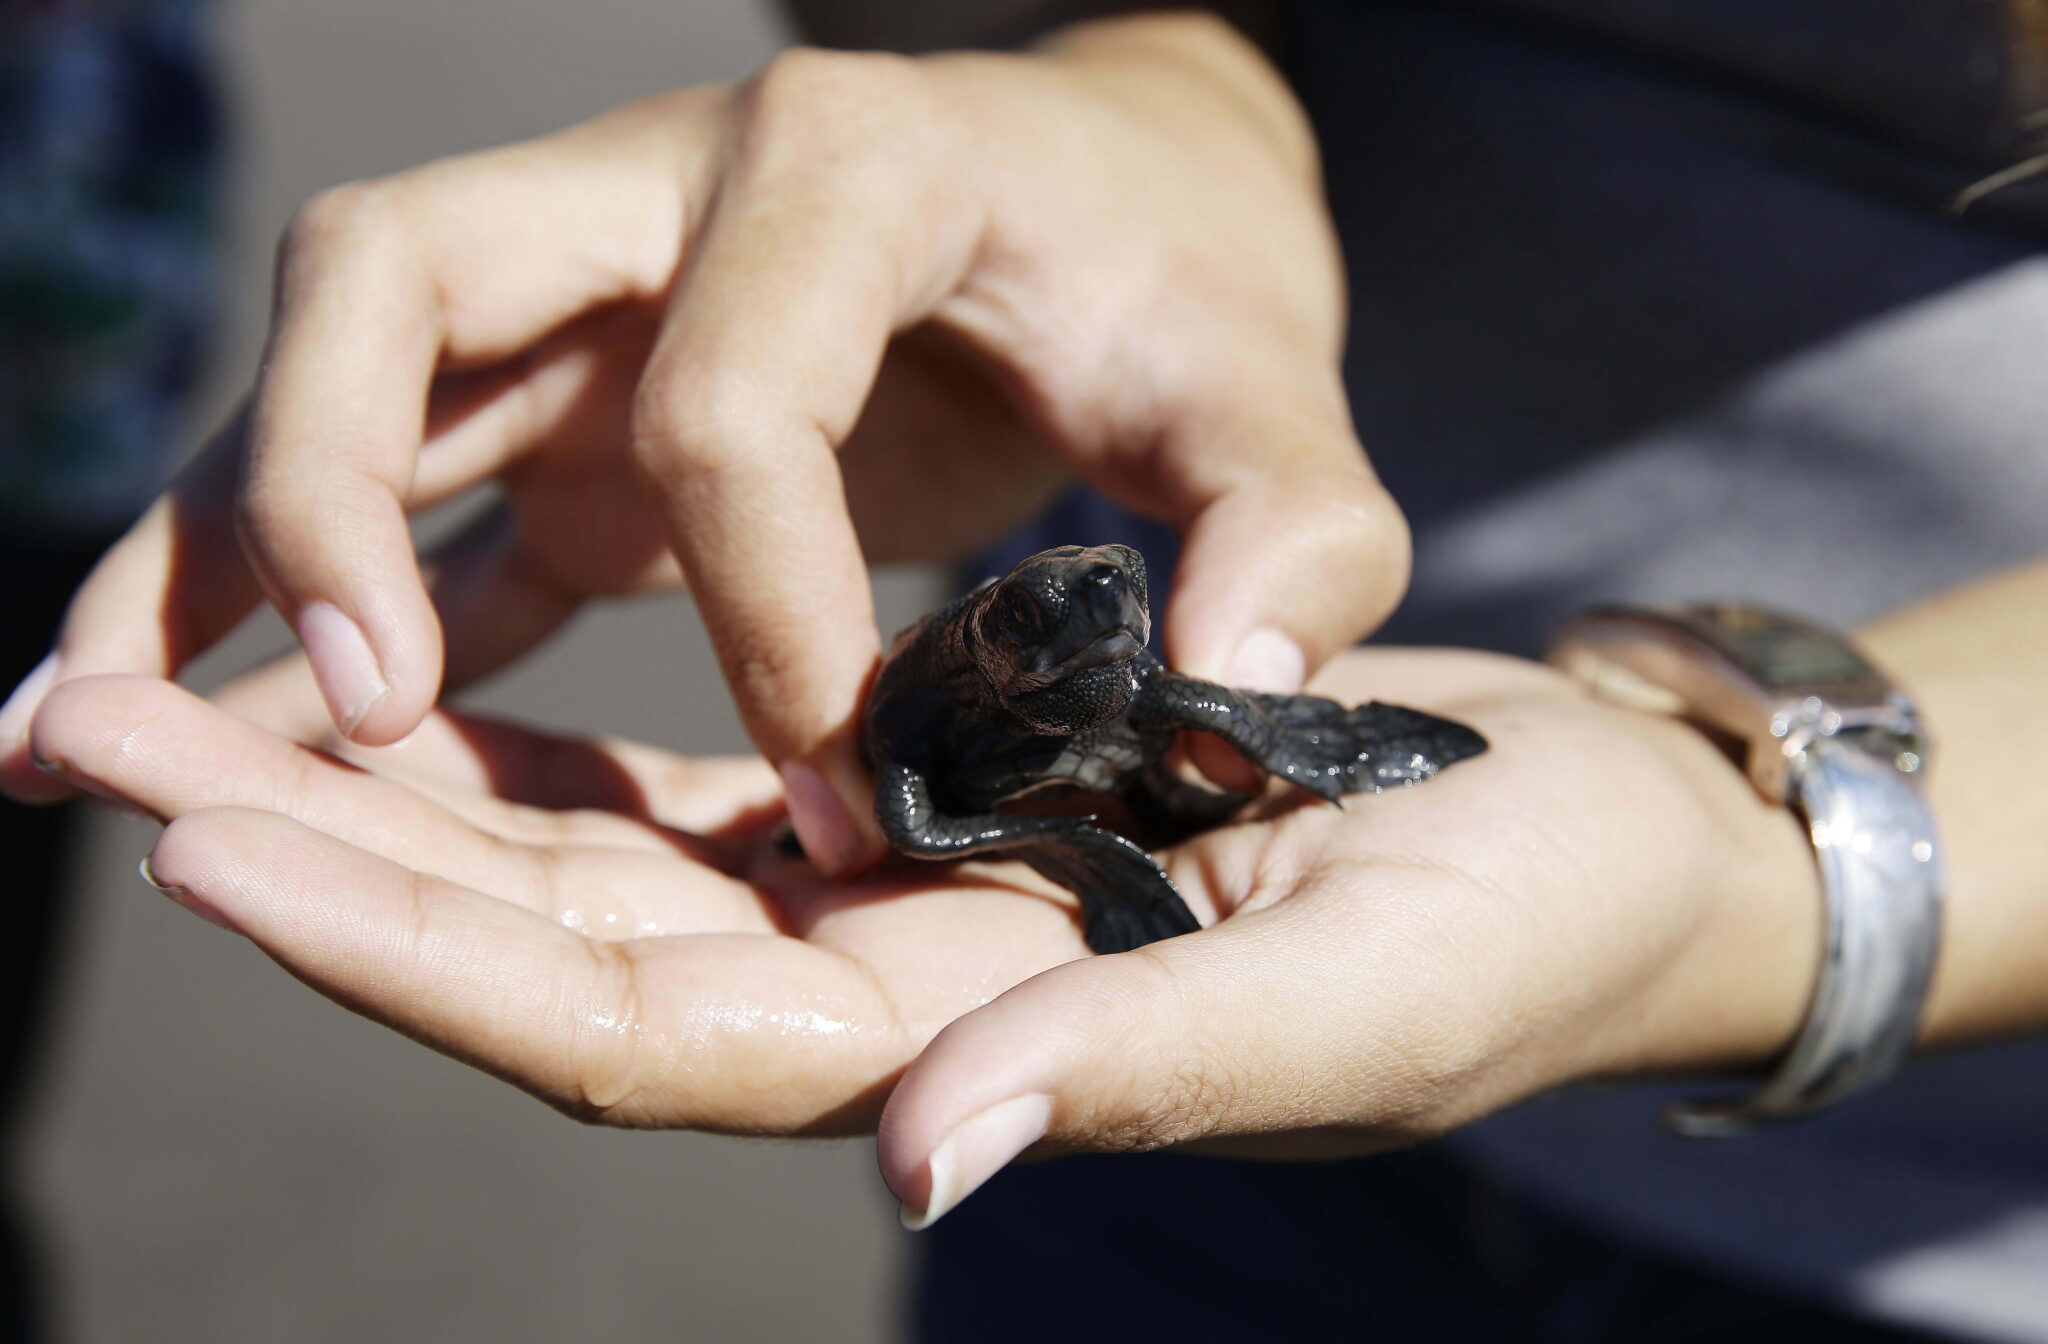 Mały żółw oliwkowy. Na wybrzeżach Salwadoru żyją co najmniej cztery gatunki żółwi morskich, z których dwa są zagrożone wyginięciem, są chronione przez mieszkańców tych obszarów, fot. EPA / Miguel Lemus